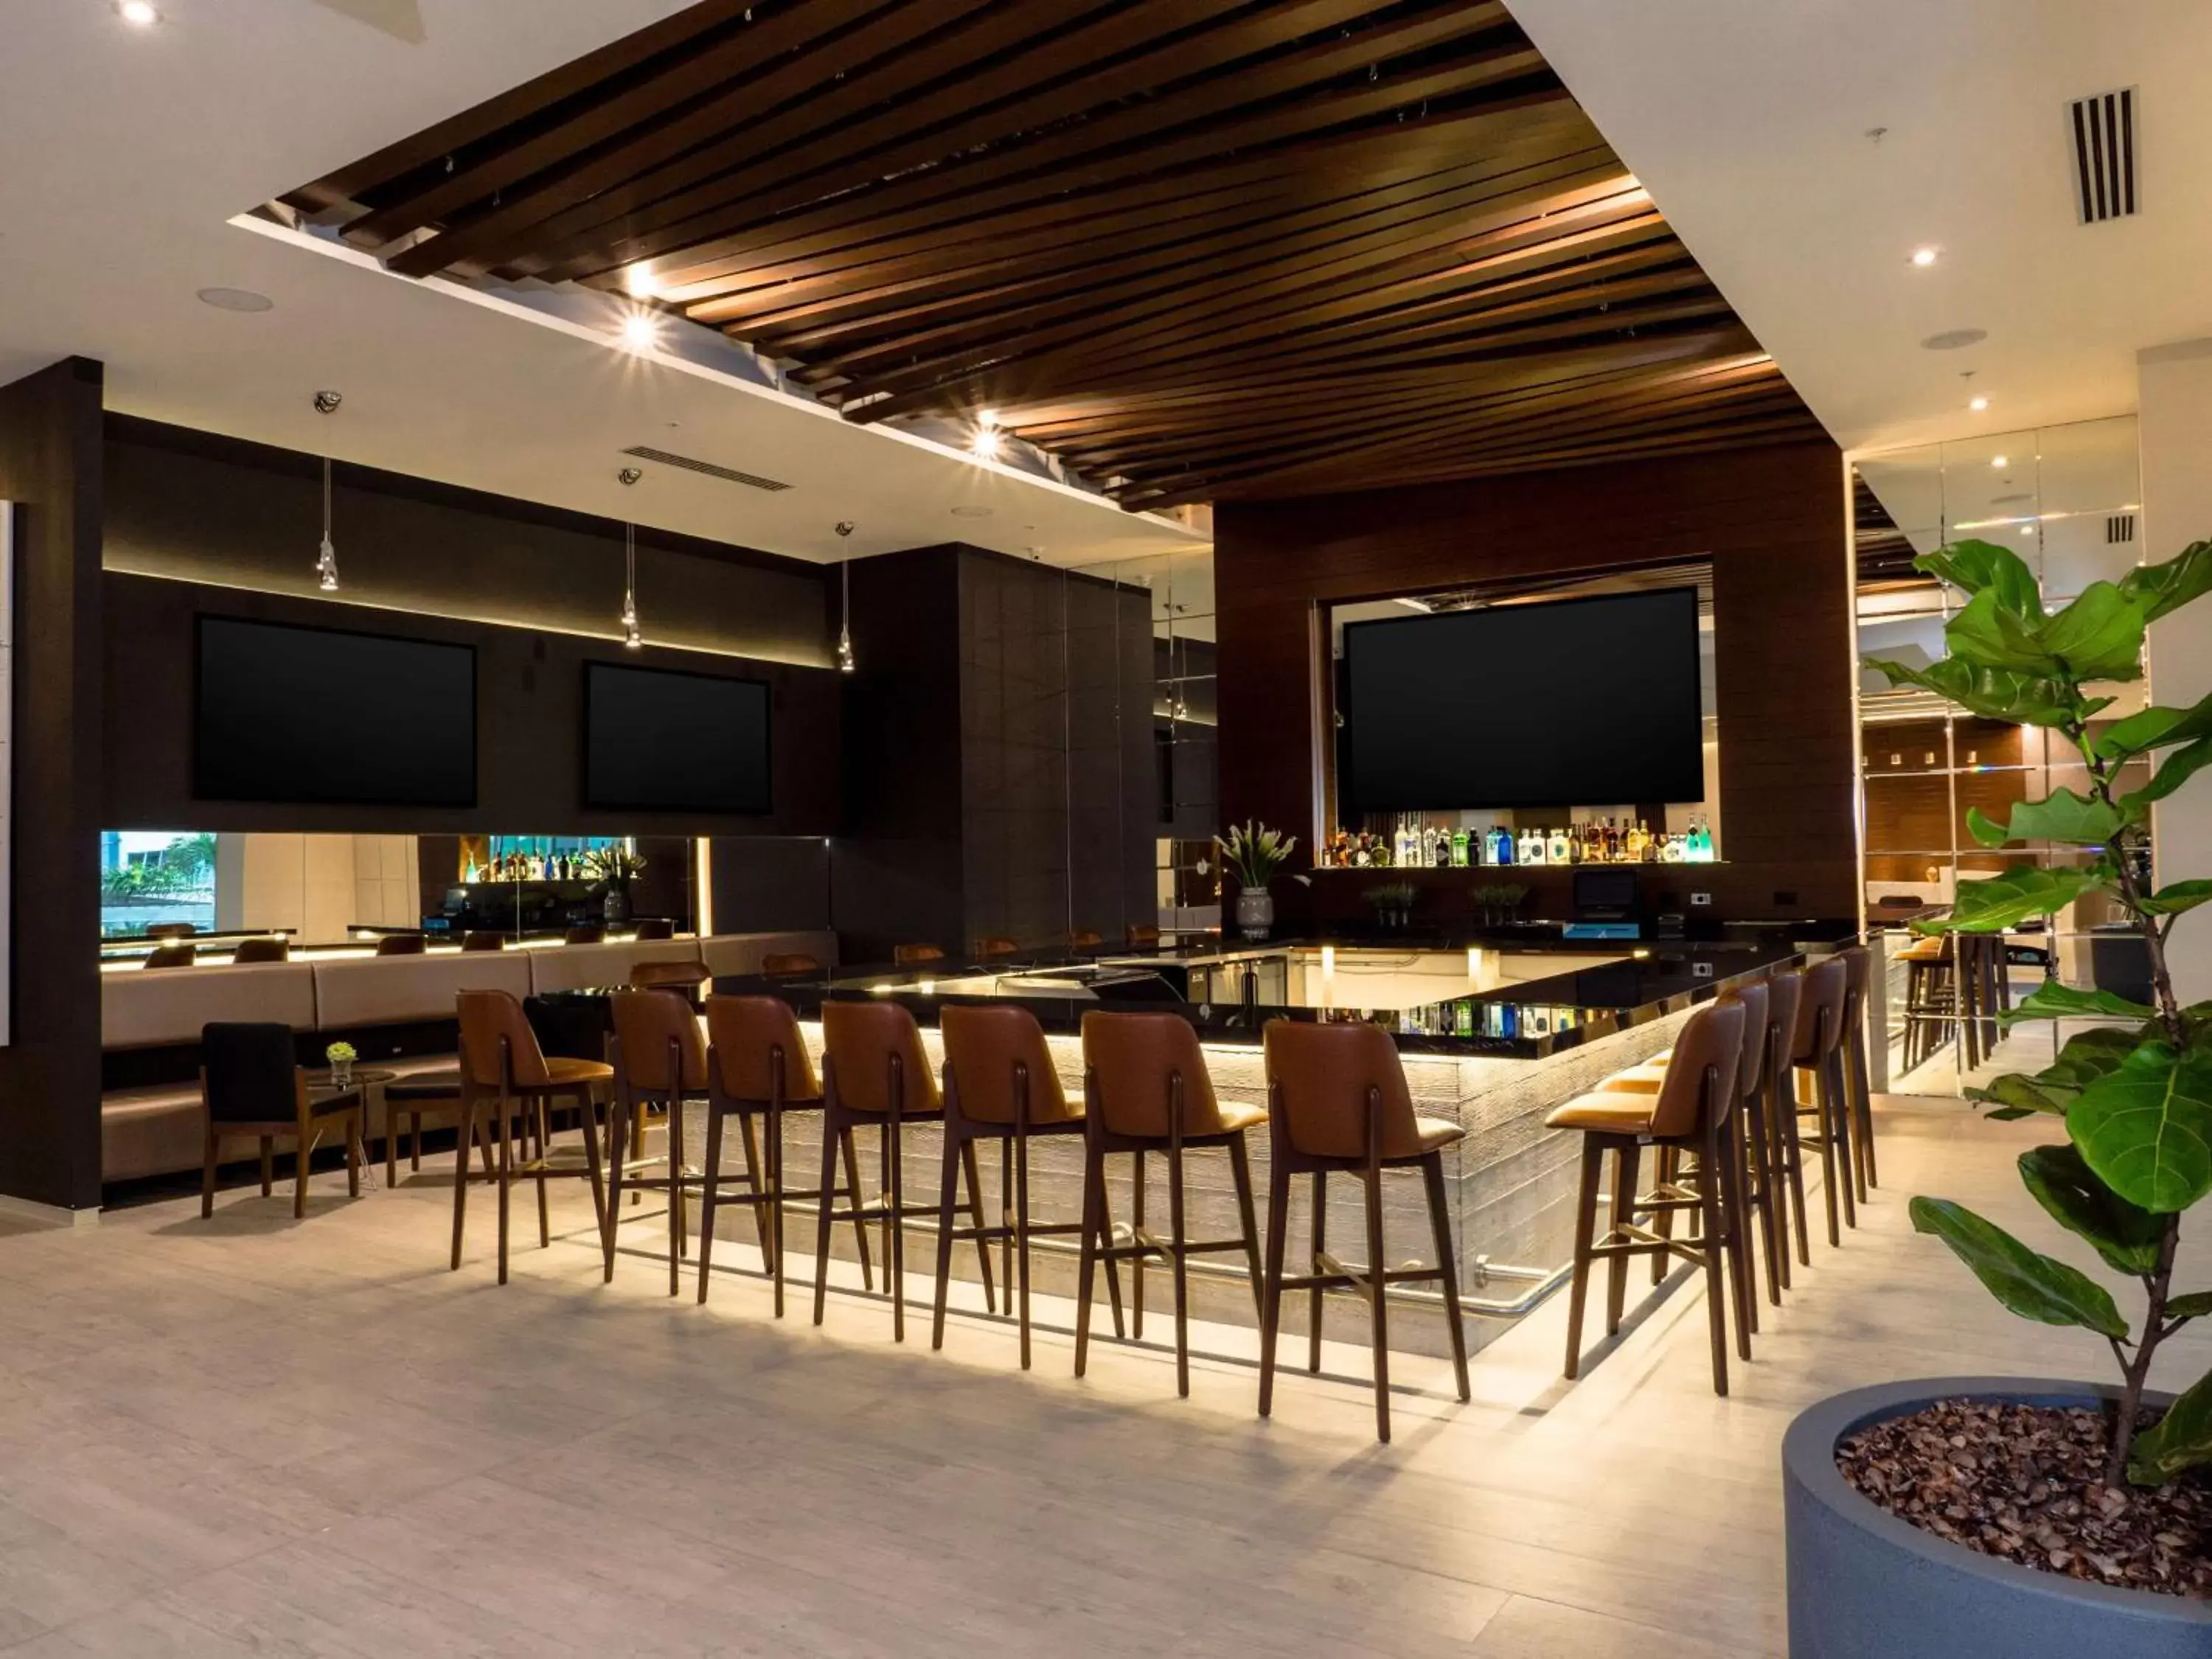 Lounge or bar in Hilton Garden Inn Santa Ana, San Jose